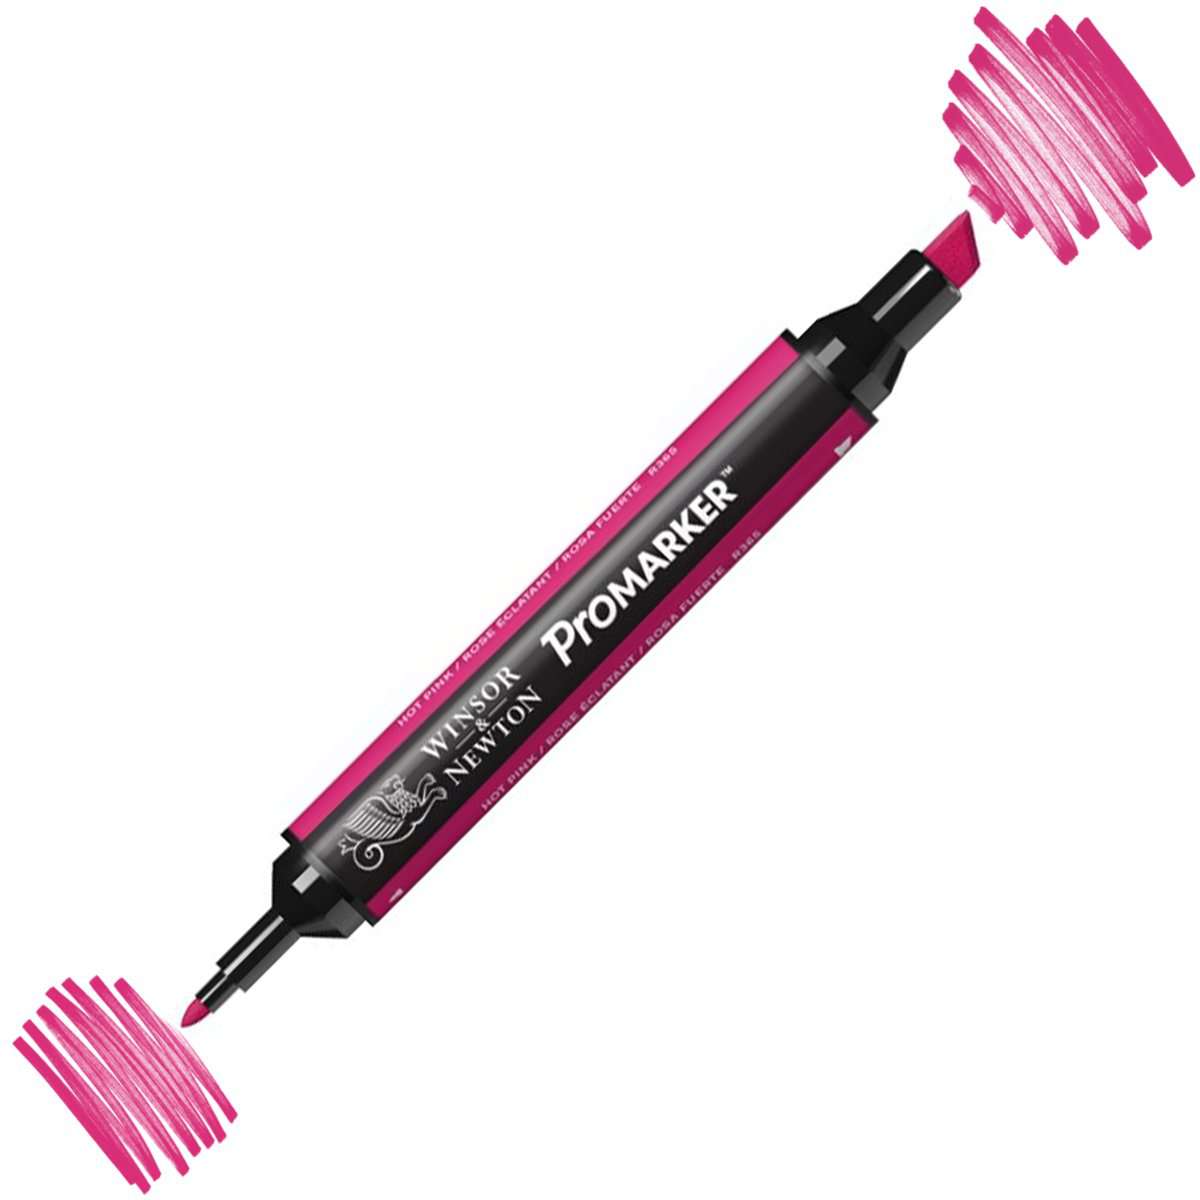 Winsor Newton Letraset Promarker Kalem R365 Hot Pink